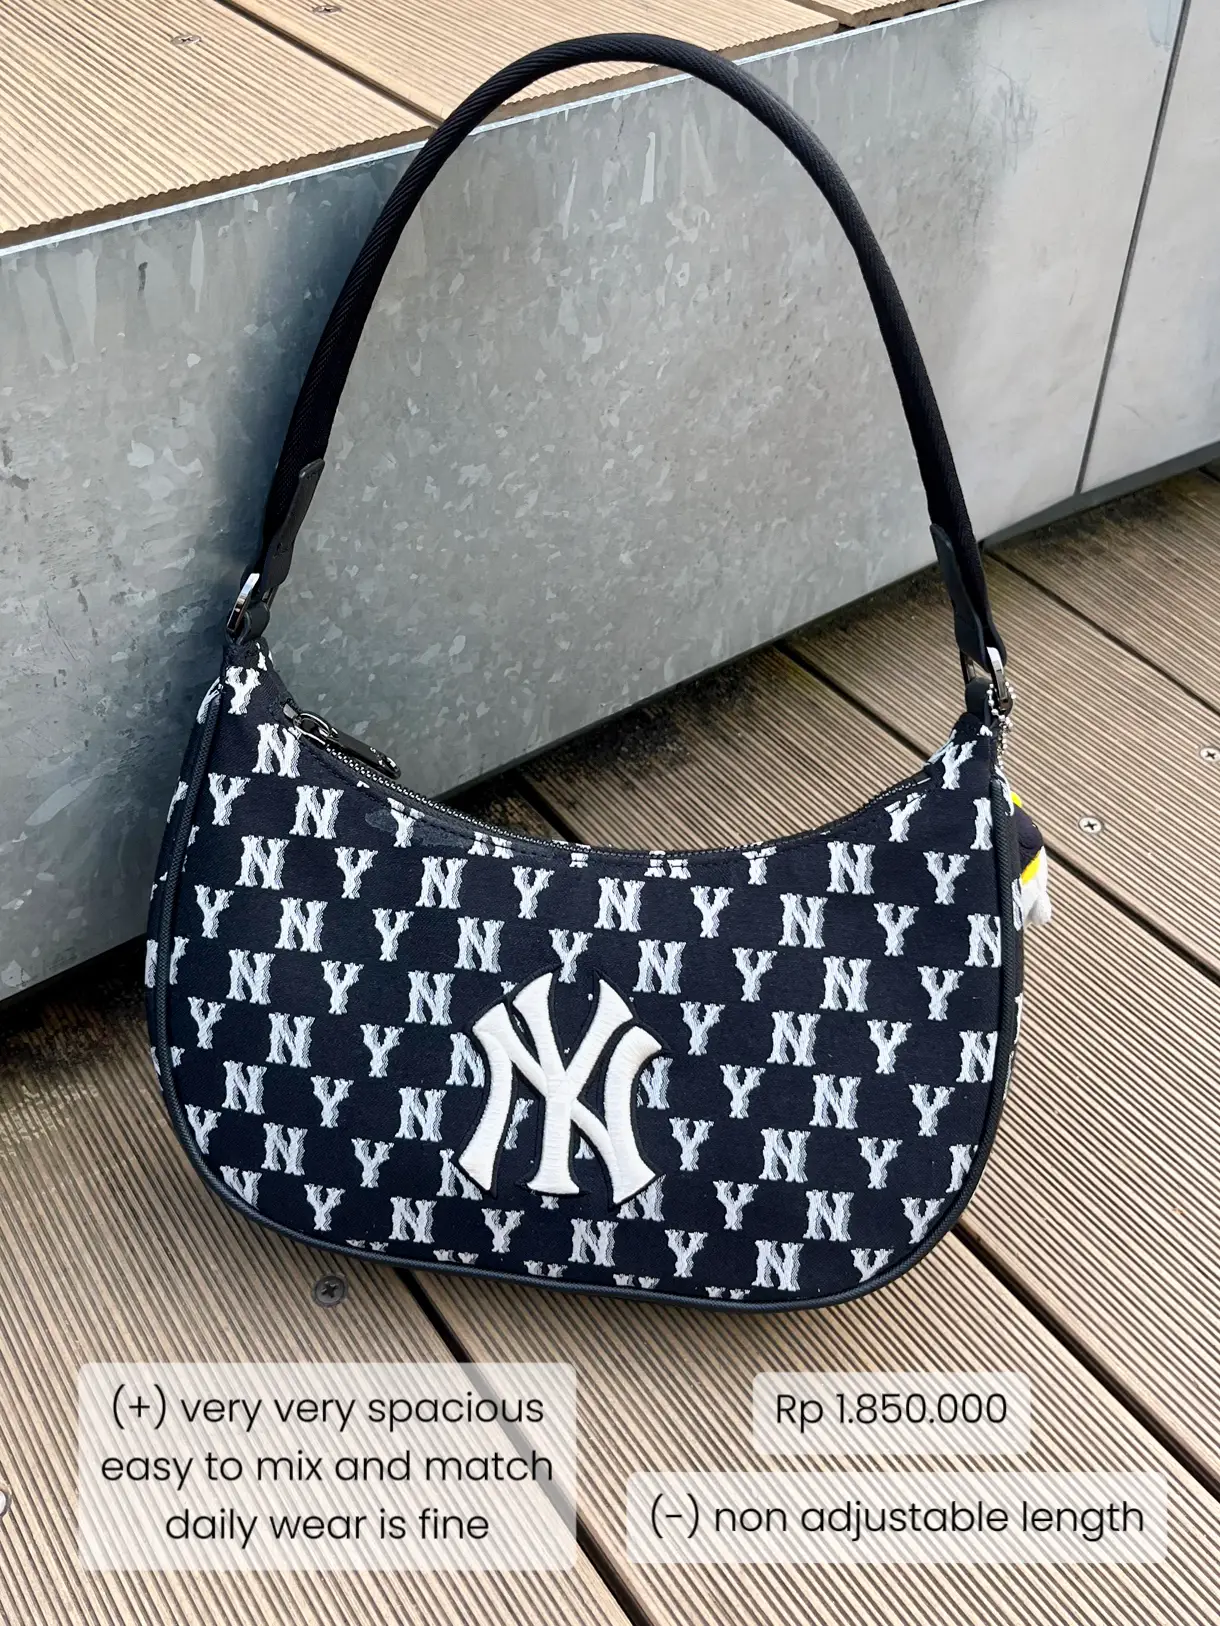 NEW YORK YANKEES Nylon Hobo Bag (Black)